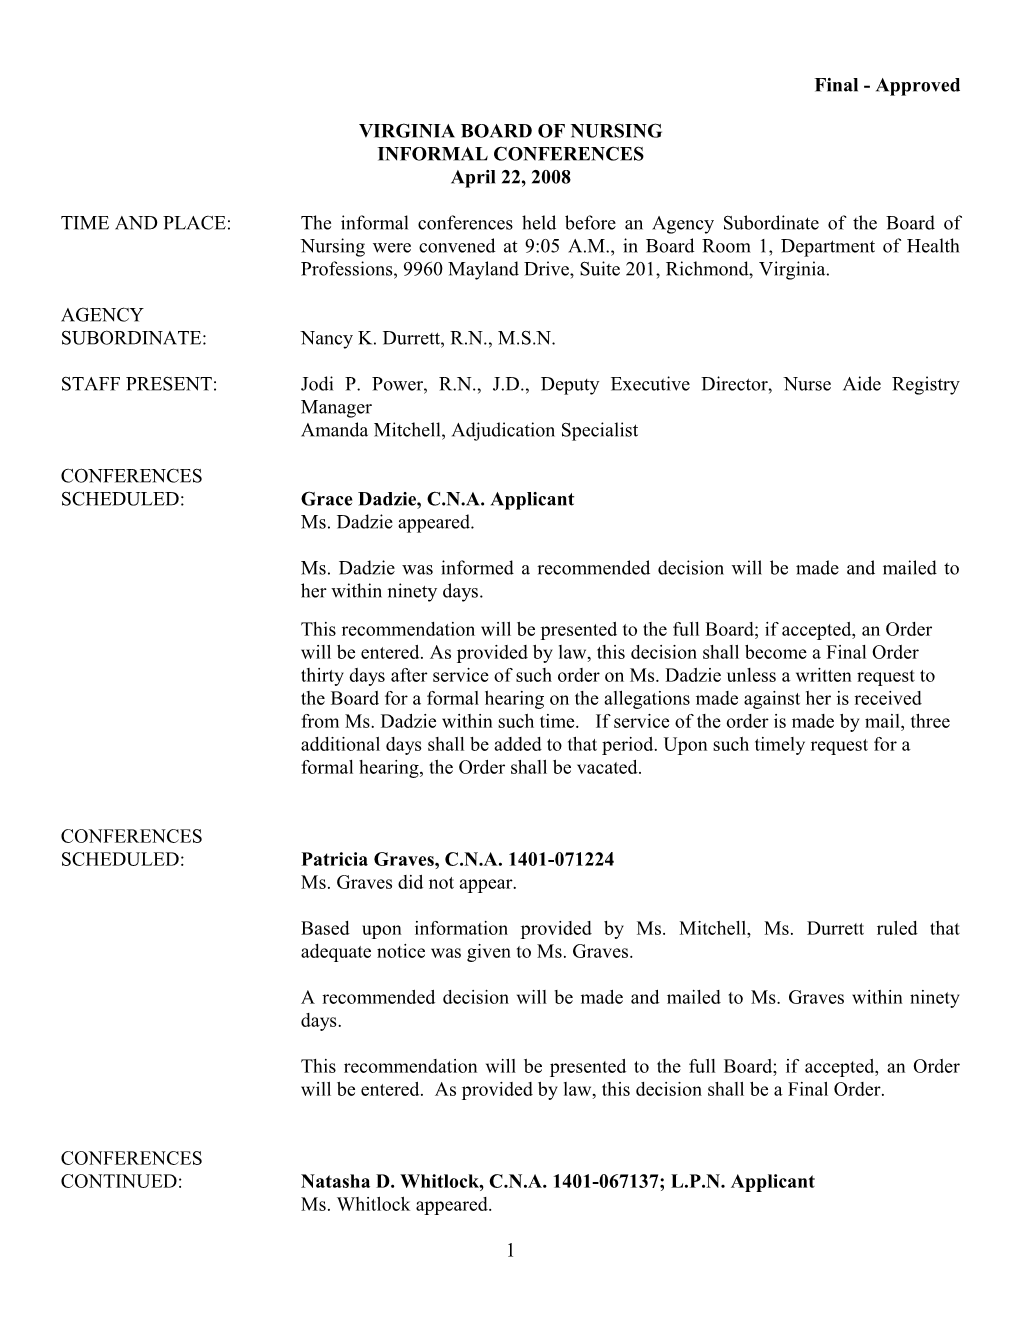 Board of Nursing - Informal Conference Minutes - April 22, 2008